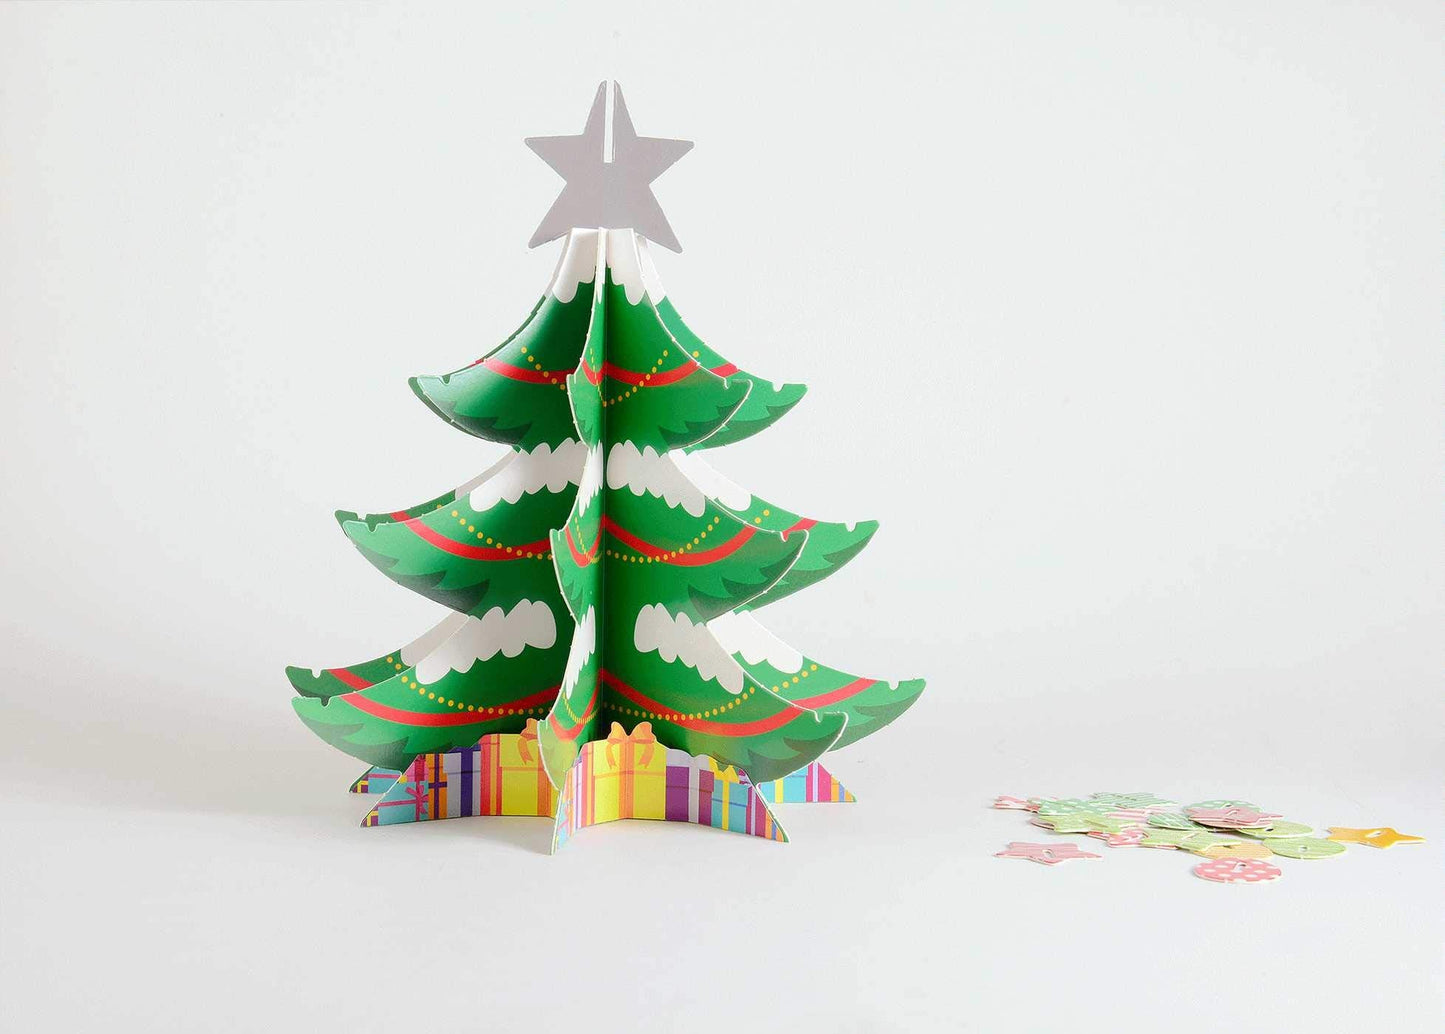 The Speedy Christmas Tree